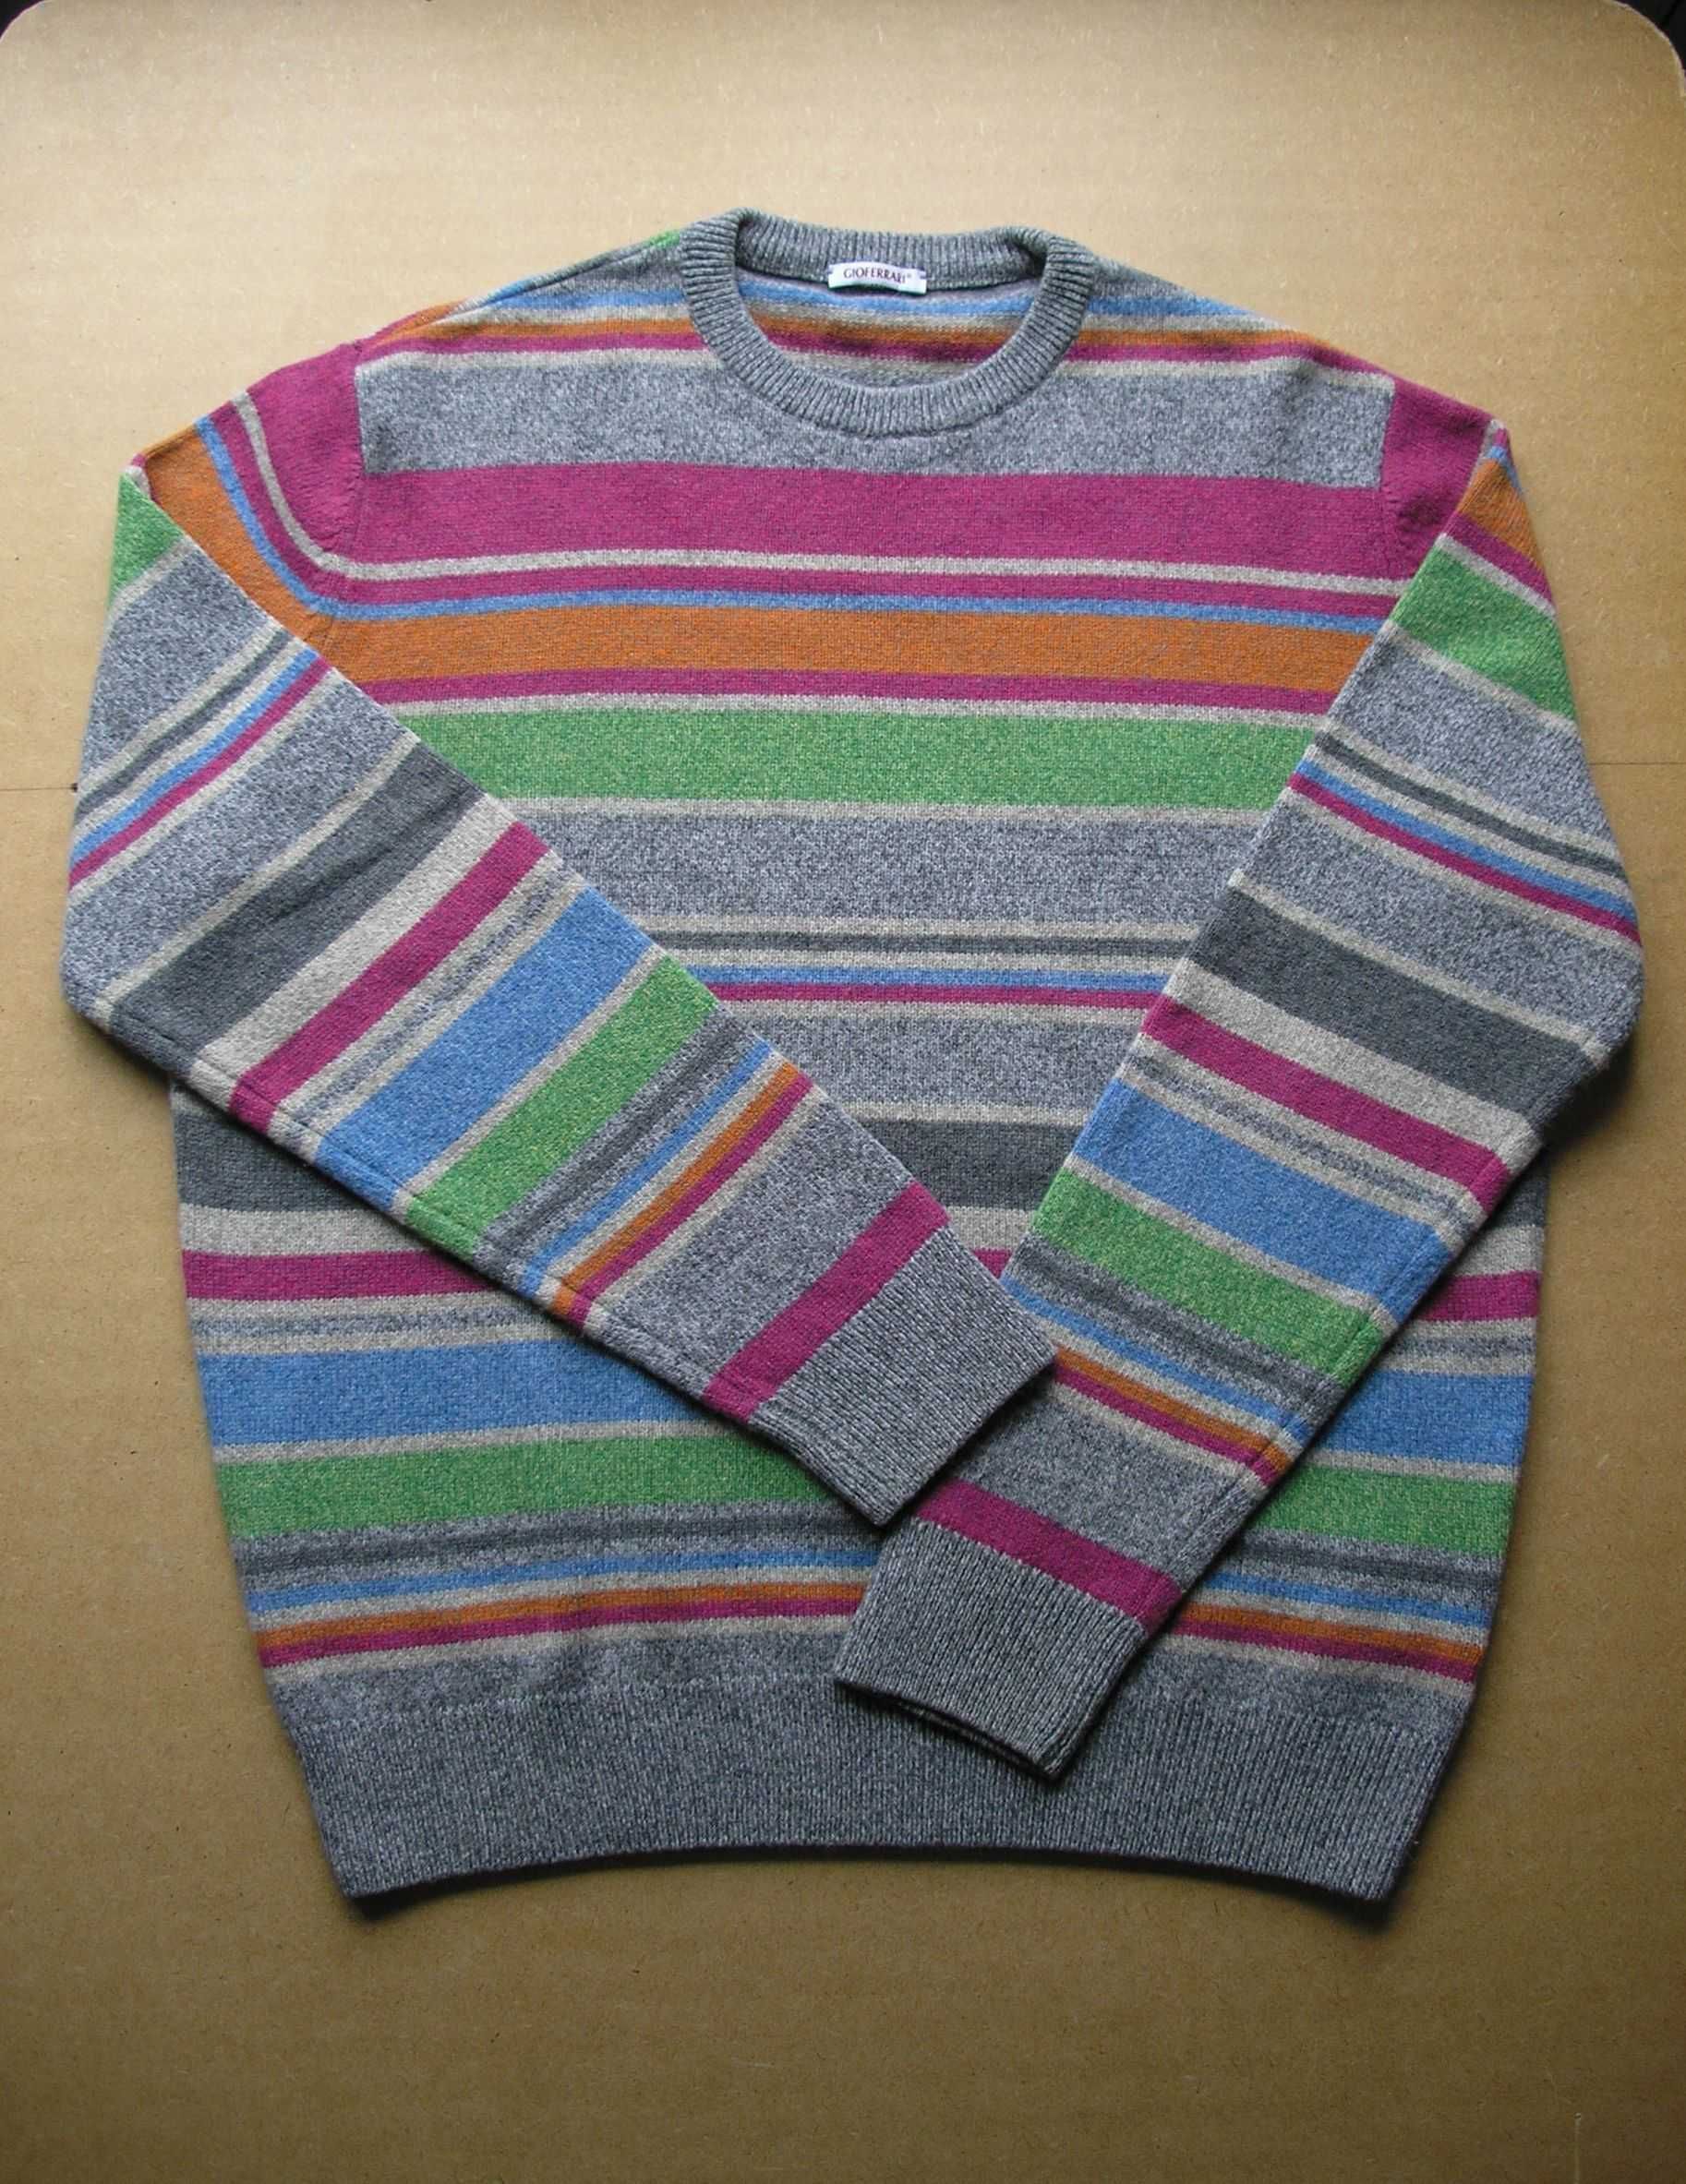 Мужской  шерстяной свитер 80% шерсть италия размер XL